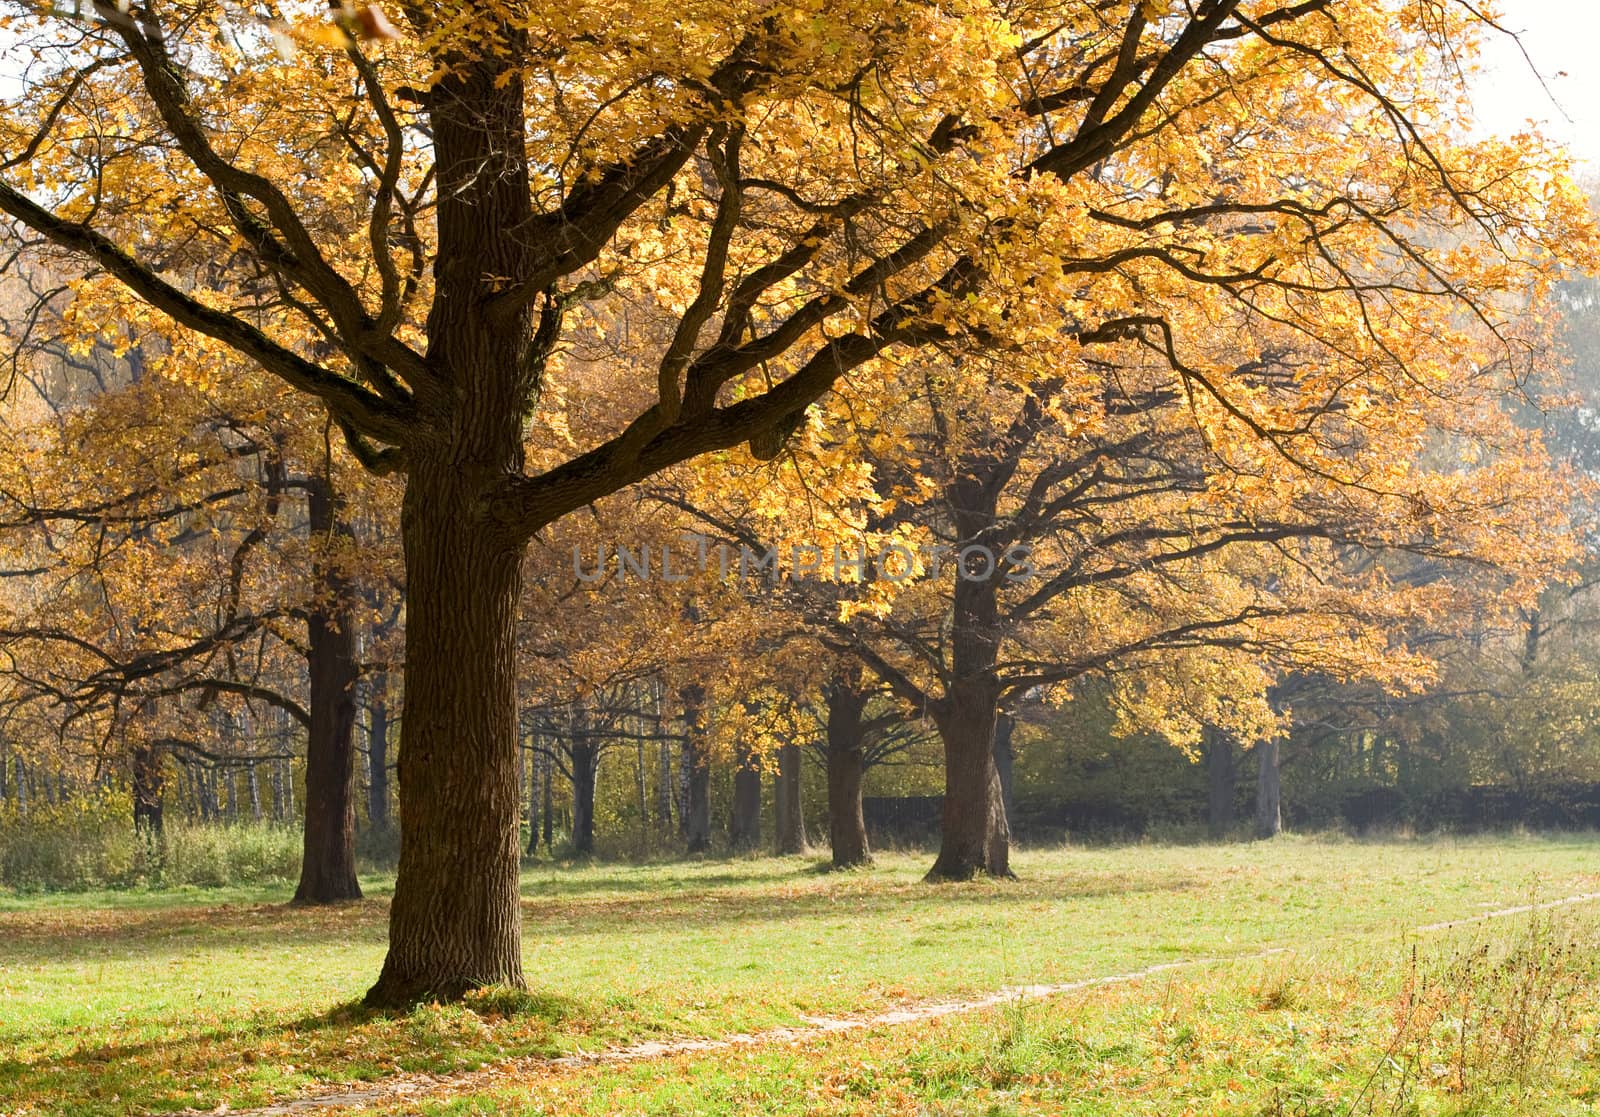 Old oaks in fall season by serpl